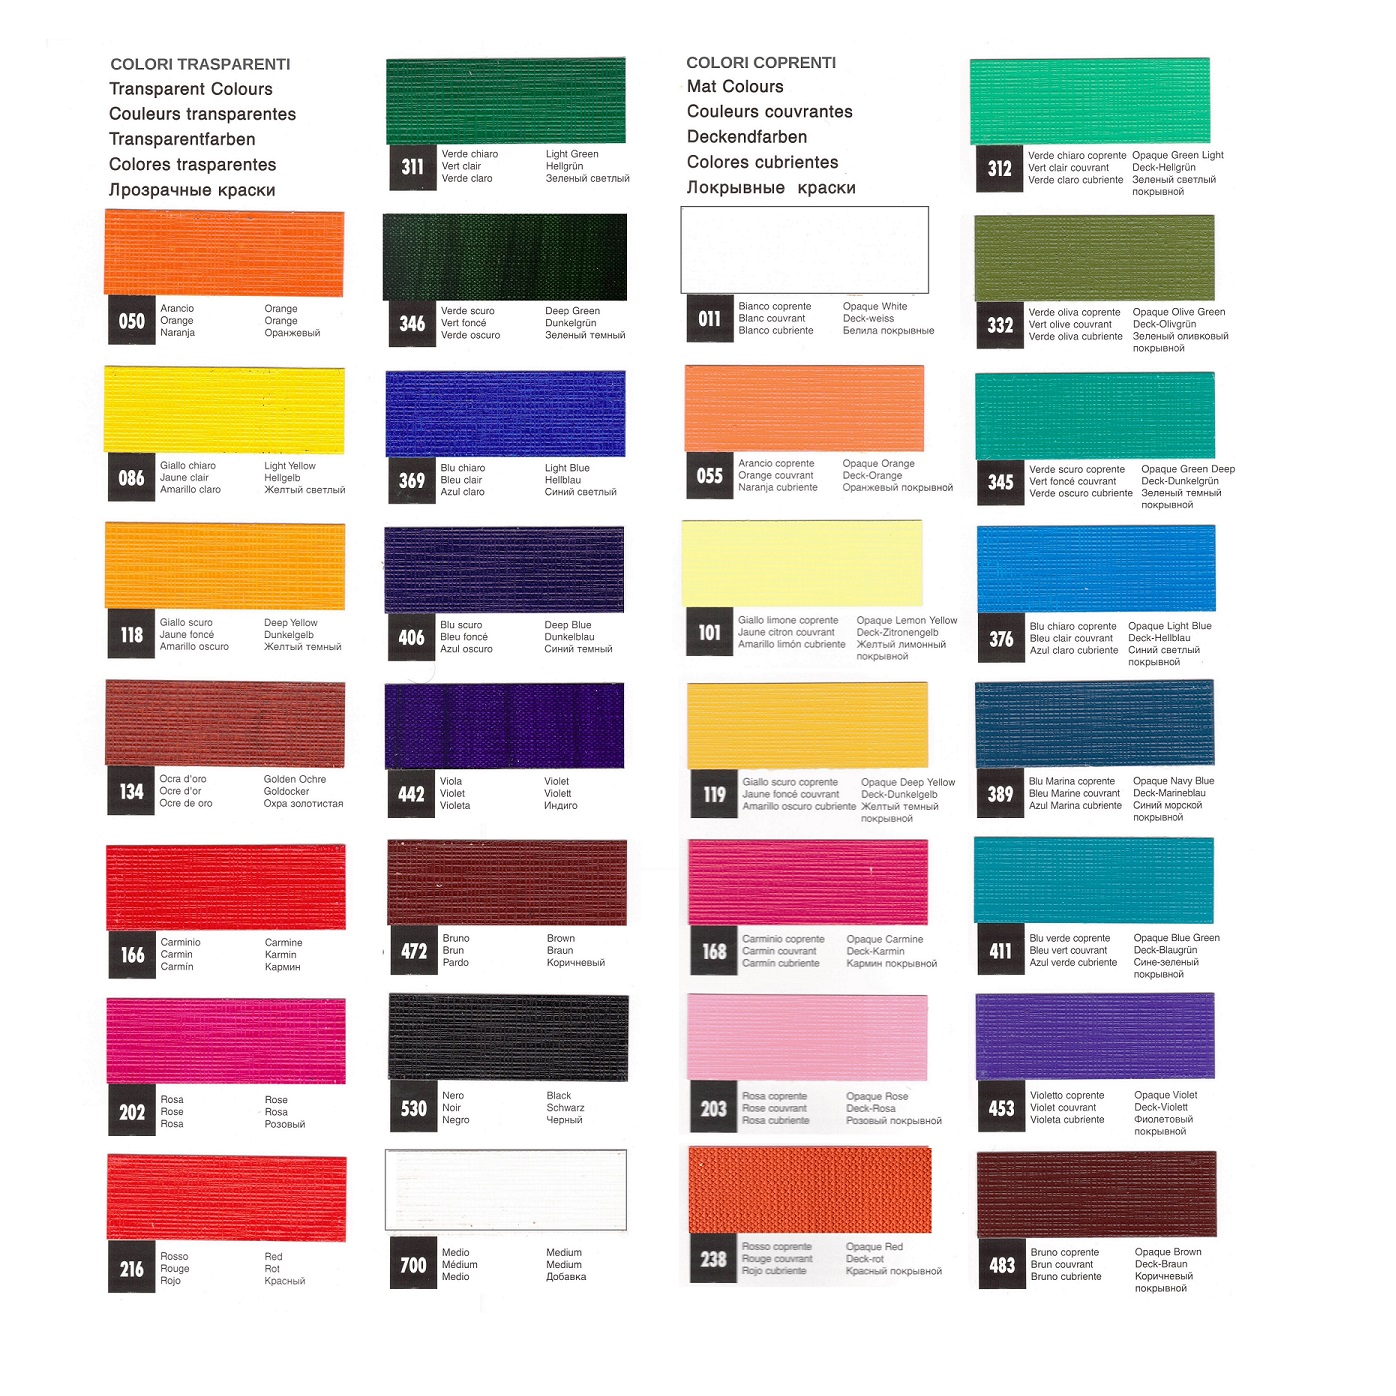 Colori trasparenti per stoffa Maimeri - Colorificio Manzoni